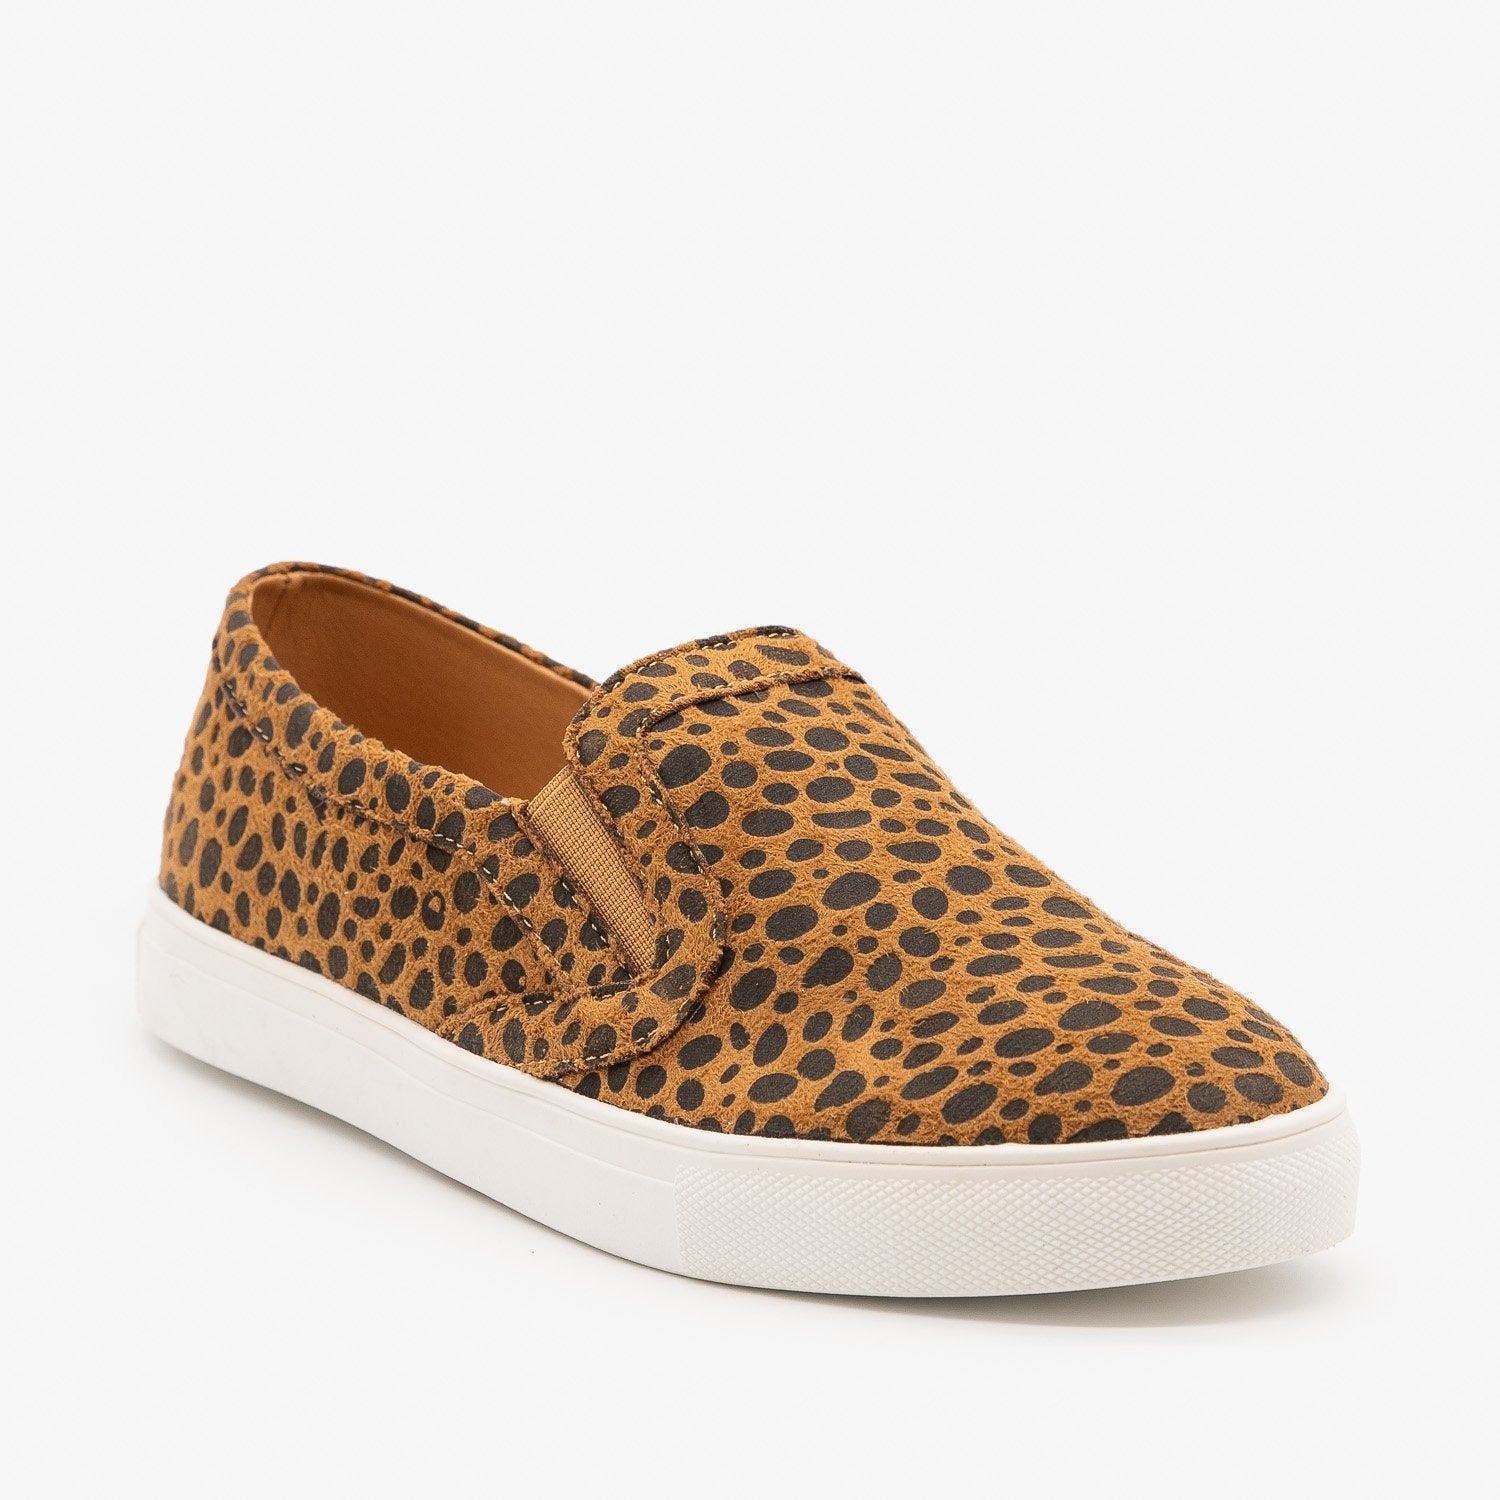 slip on cheetah sneakers